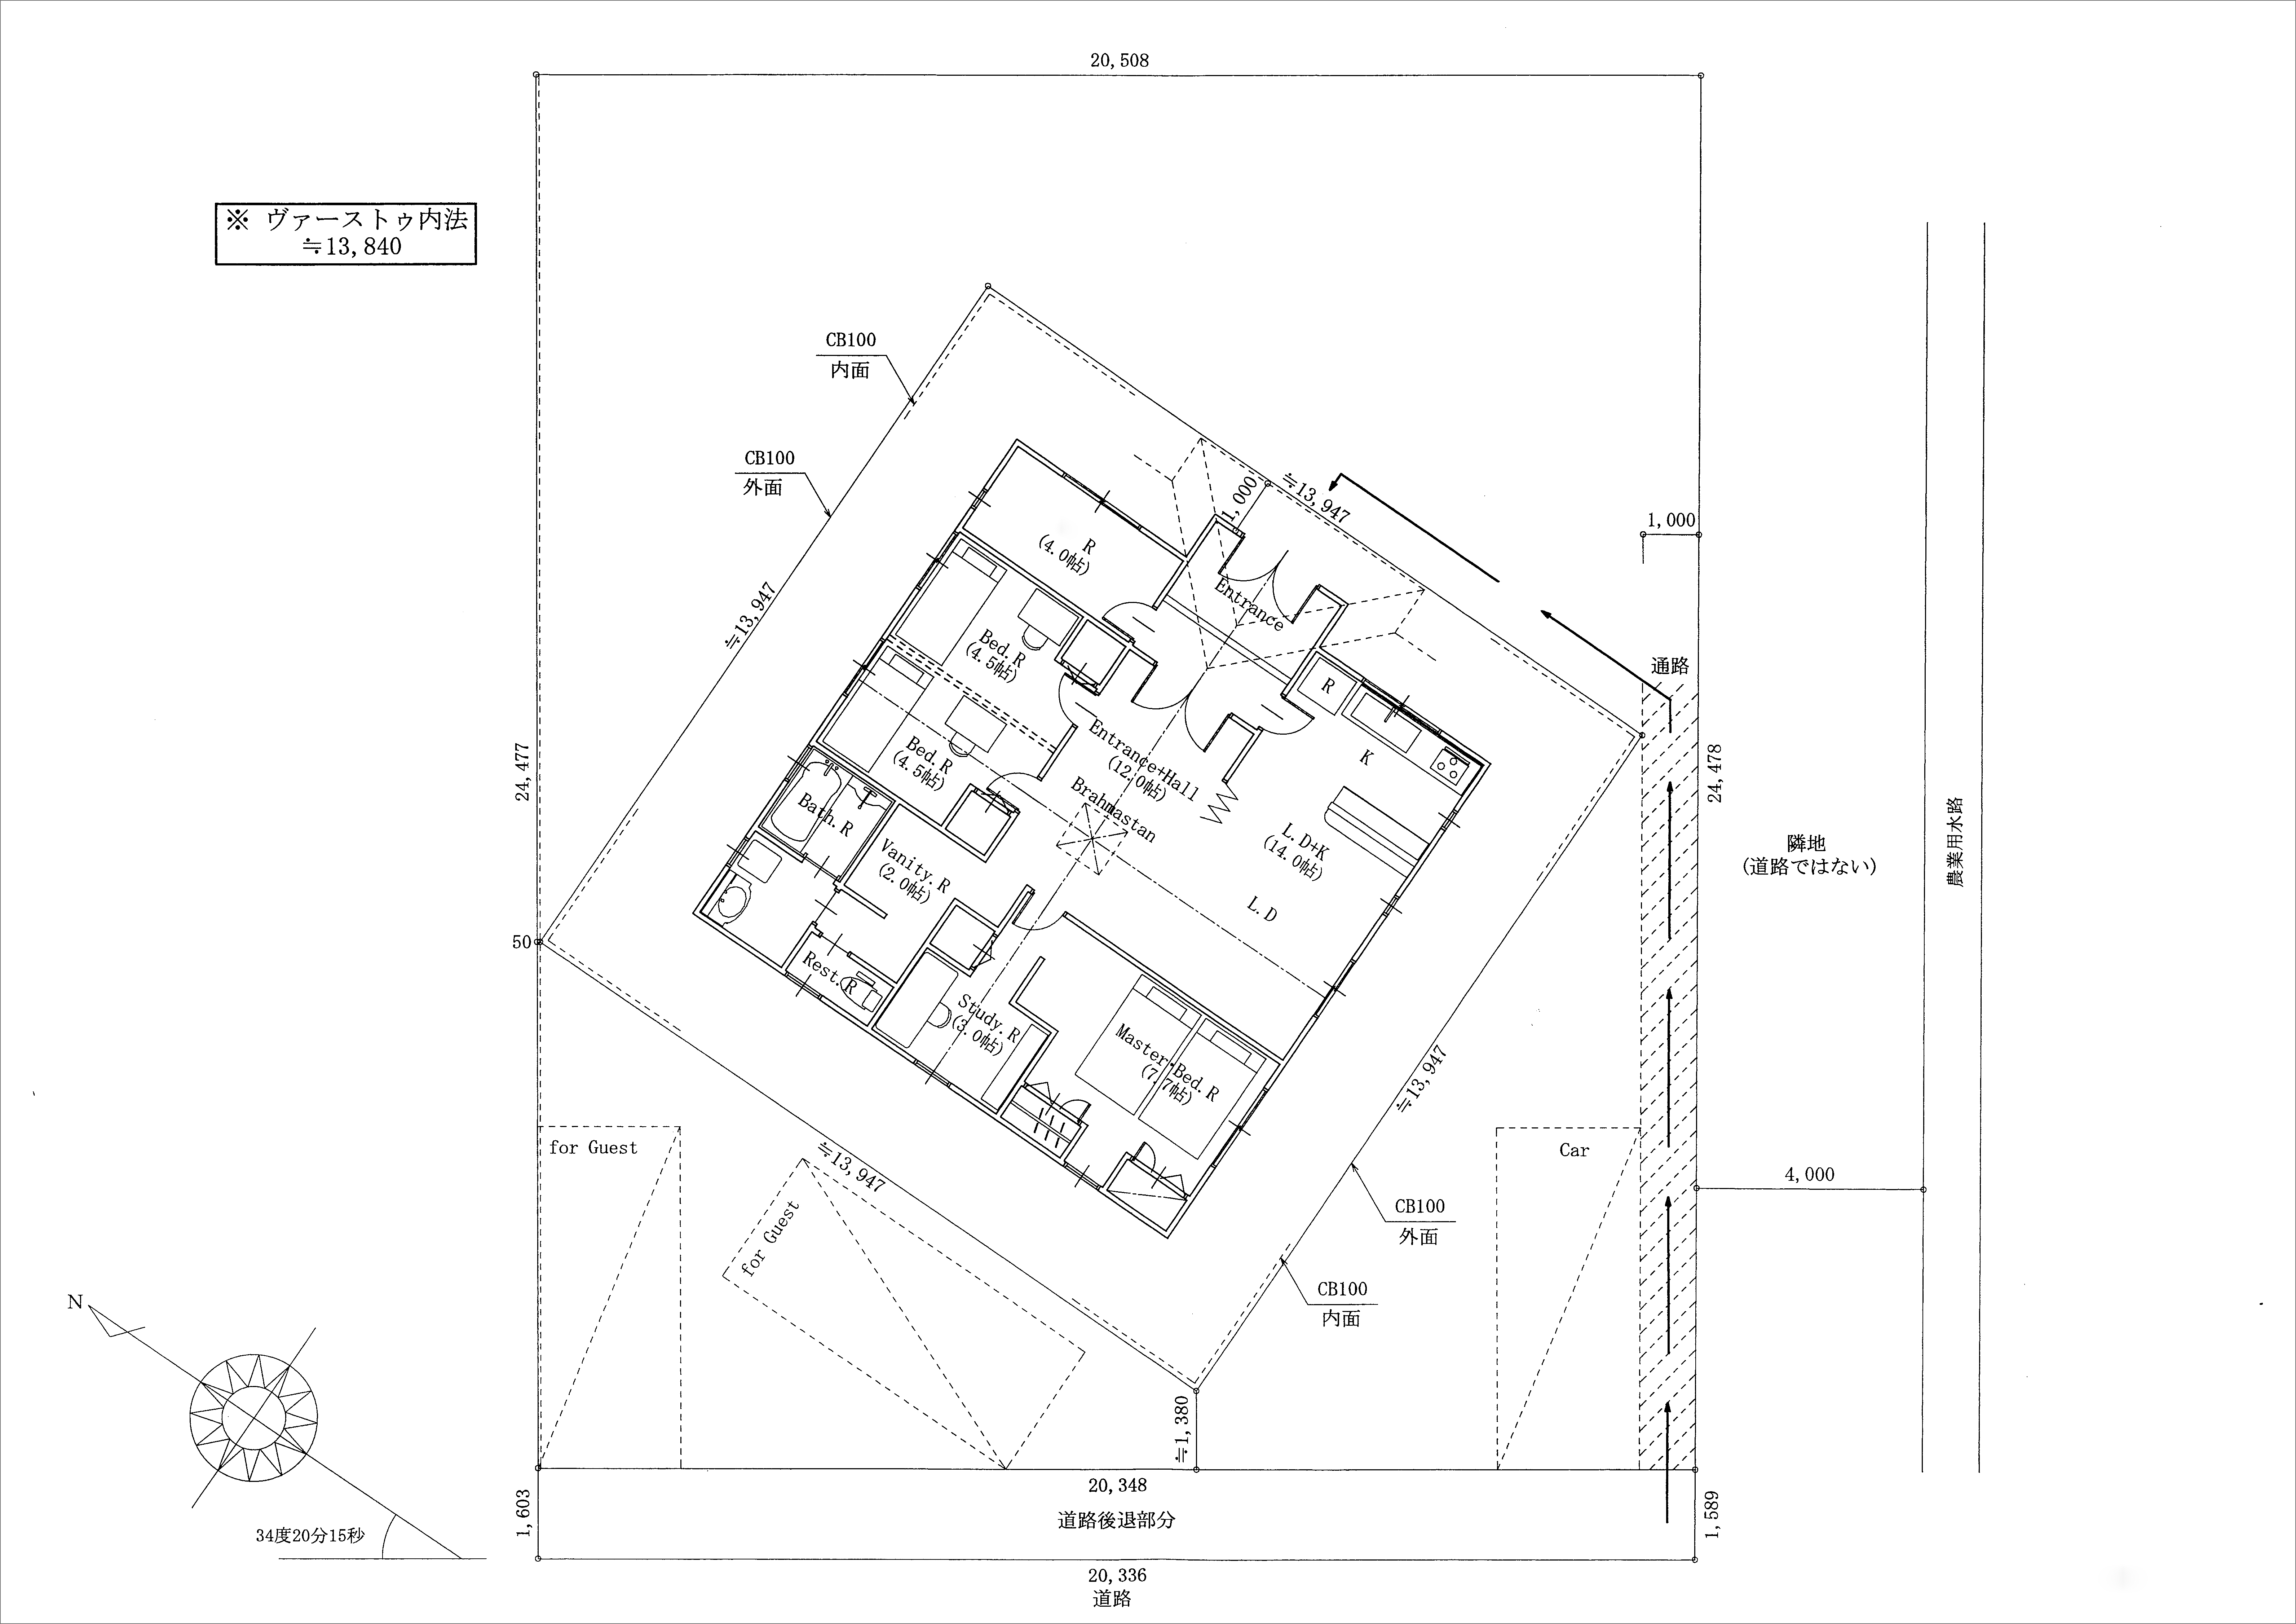 HIMALAYAHOUSE VAASTU Design Plan